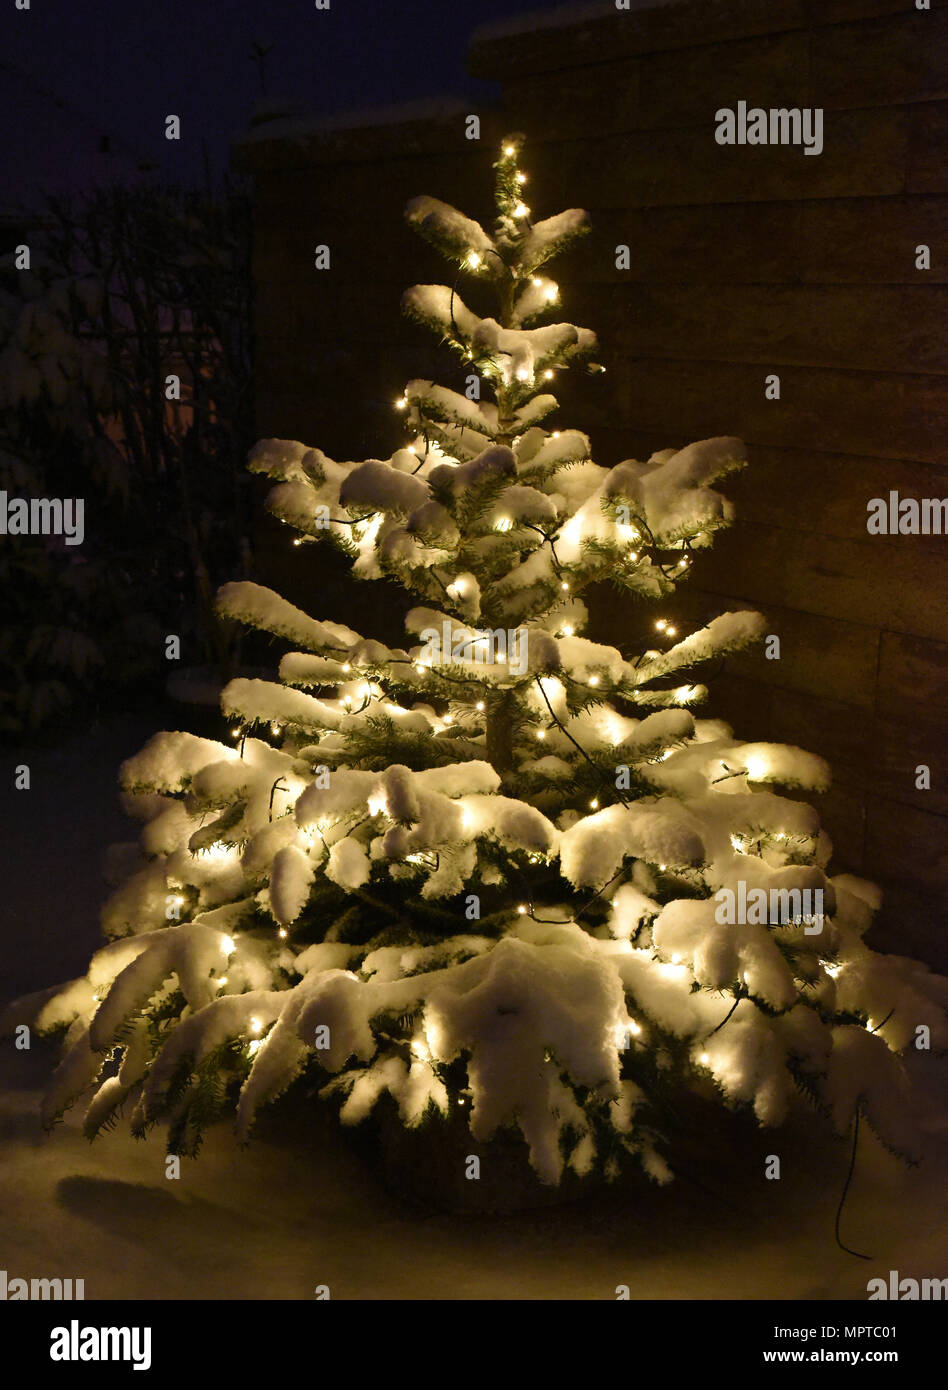 Weihnachtsbaum, Tannenbaum, Christbaum Foto Stock